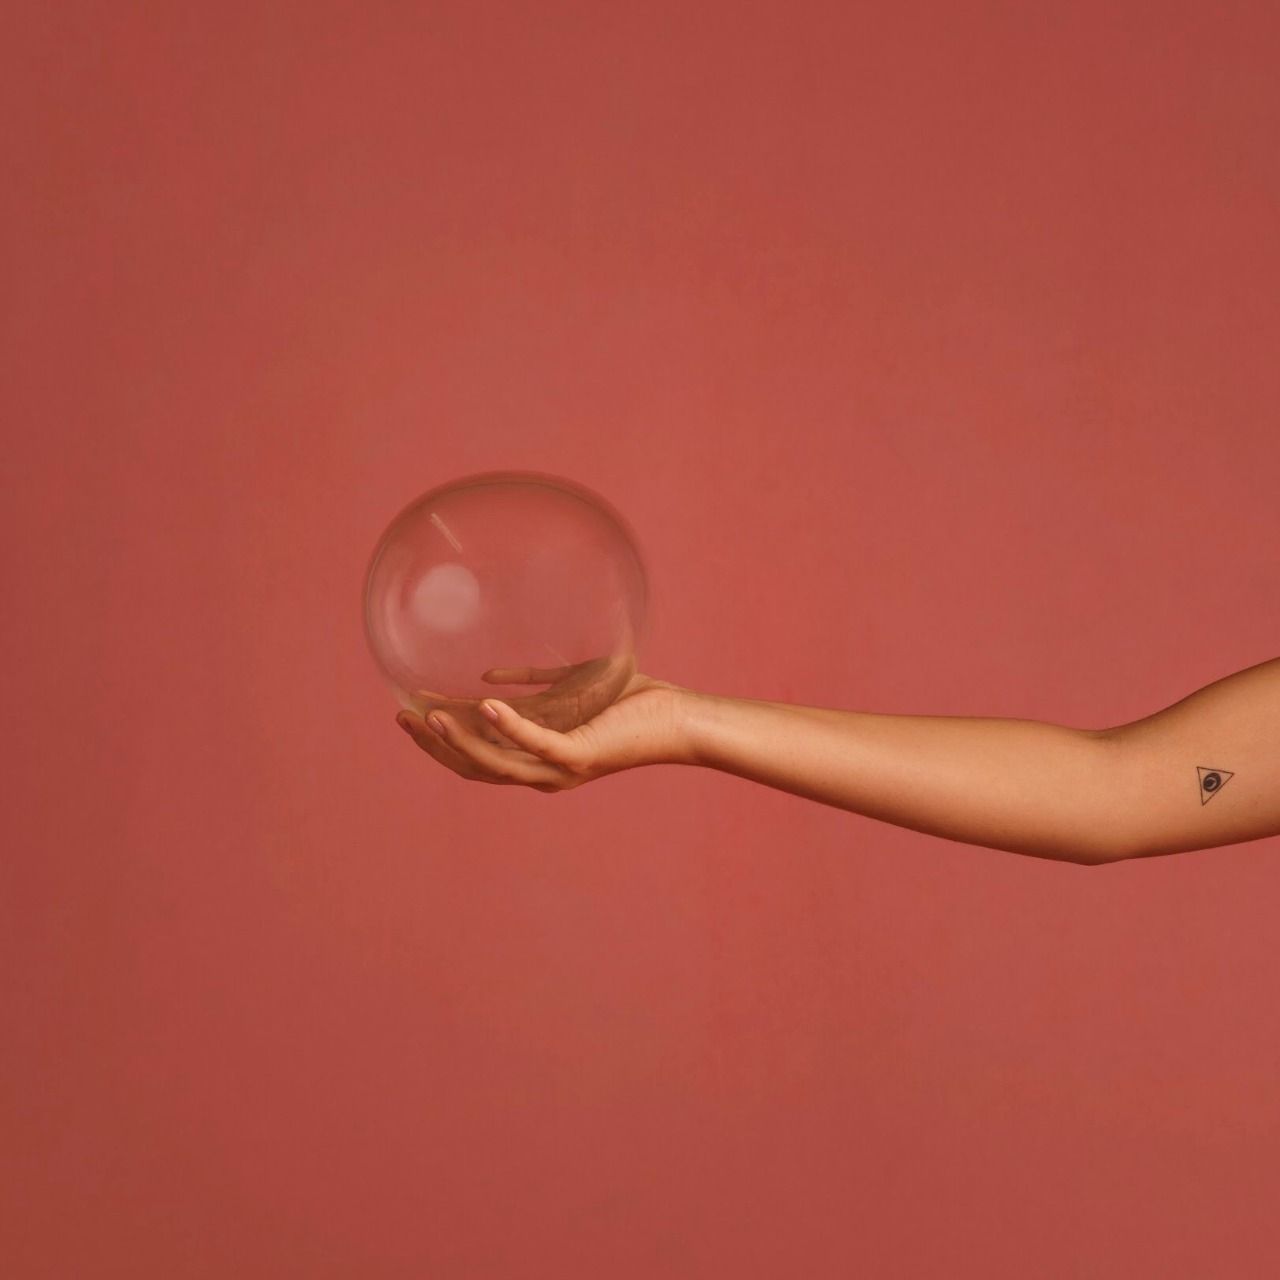 Braço feminino contento uma pequena tatuagem segurando um globo de vidro